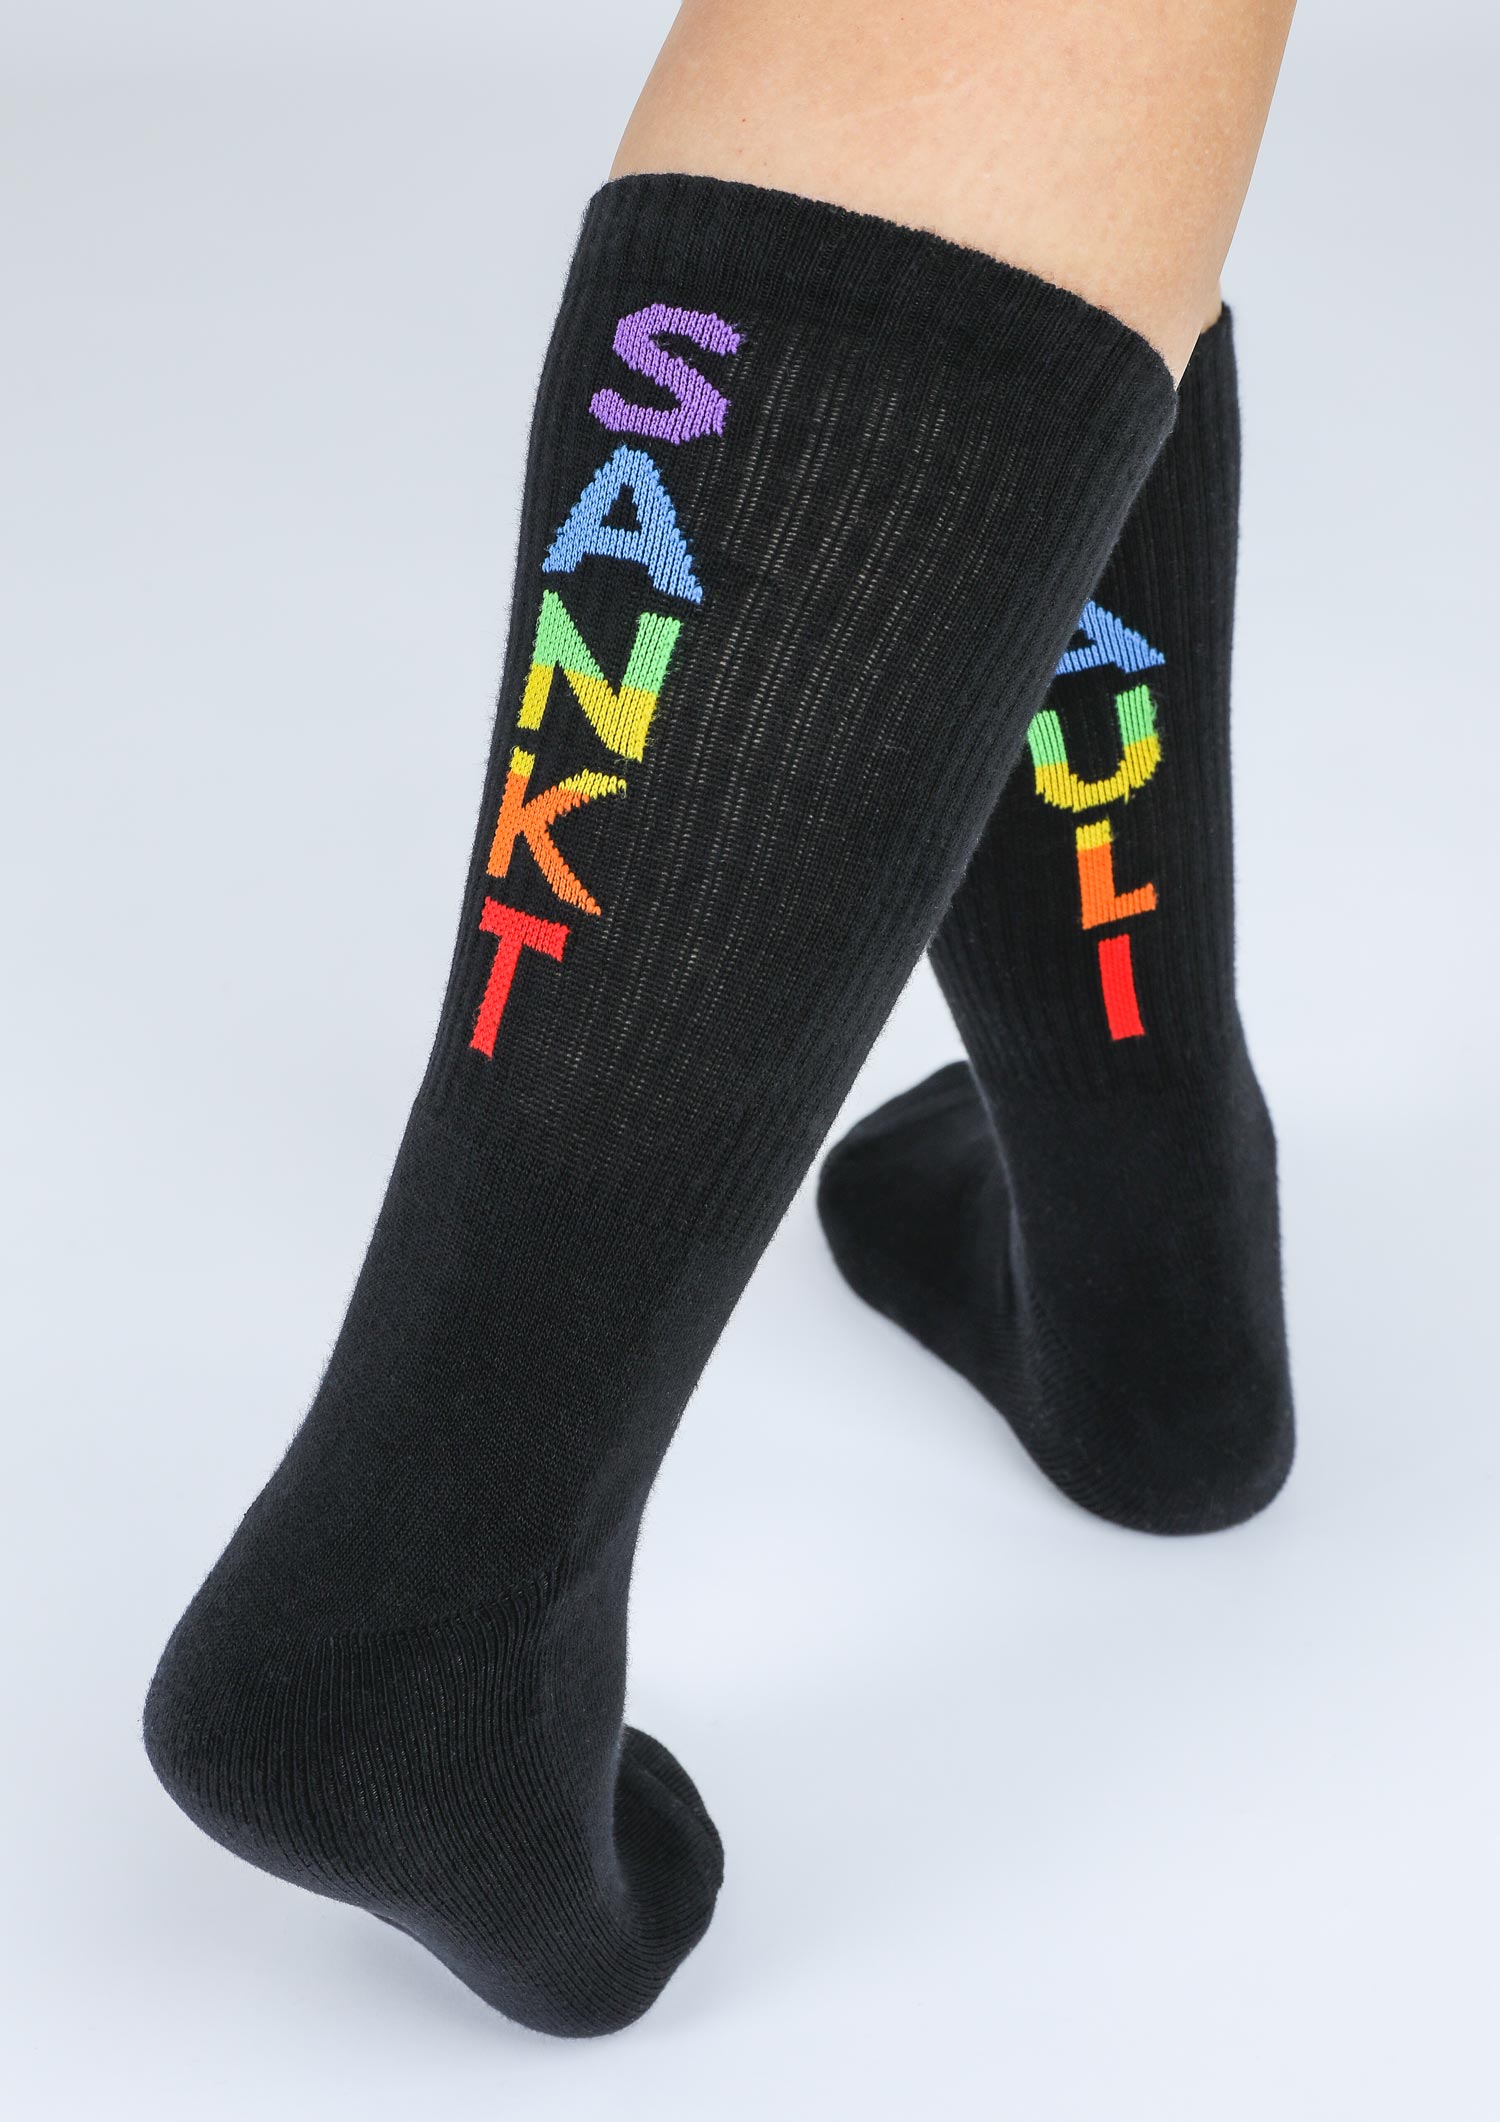 Tennis socks "Rainbow" black